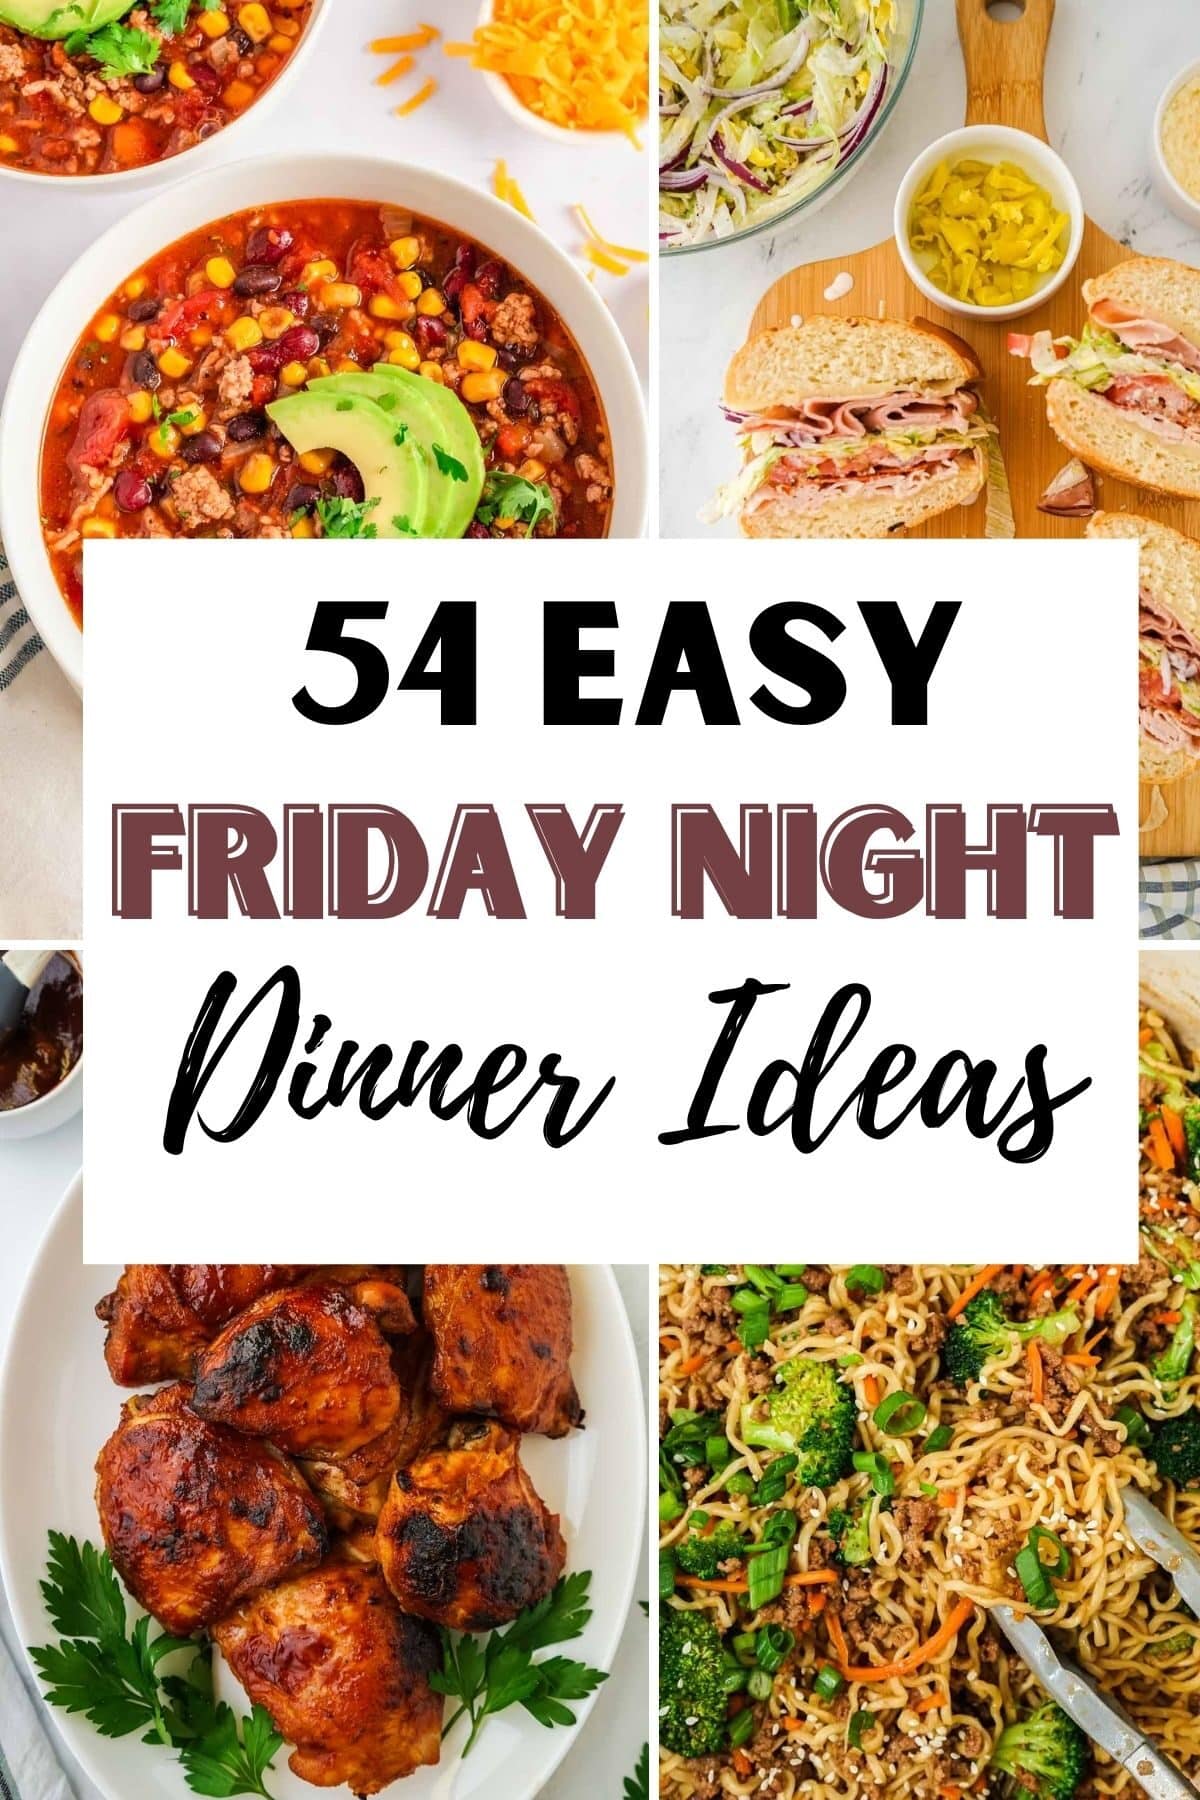 Friday Night Dinner Ideas 2 1200x1800 